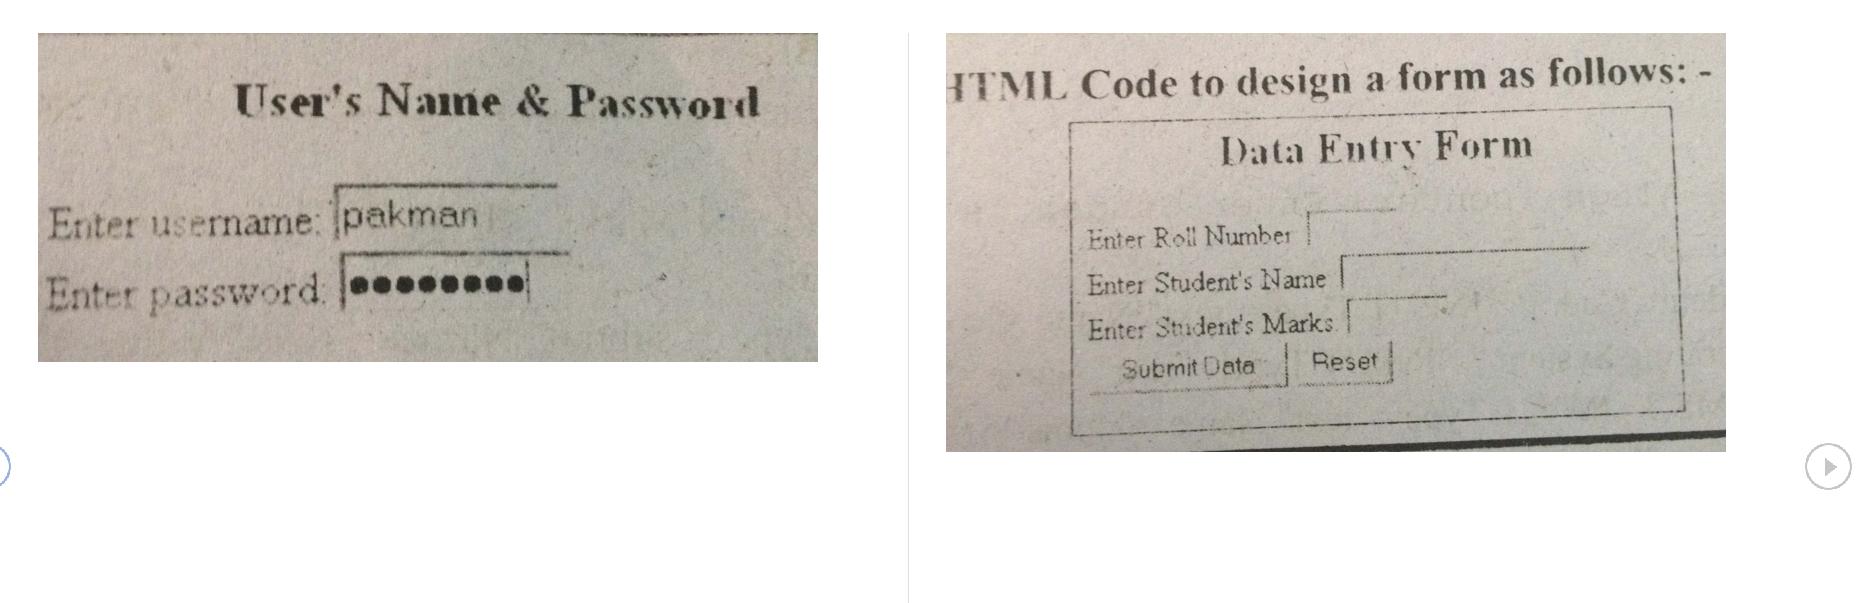 User's Name & Password Enter username: pakman Enter password: ....... HTML Code to design a form as follows: